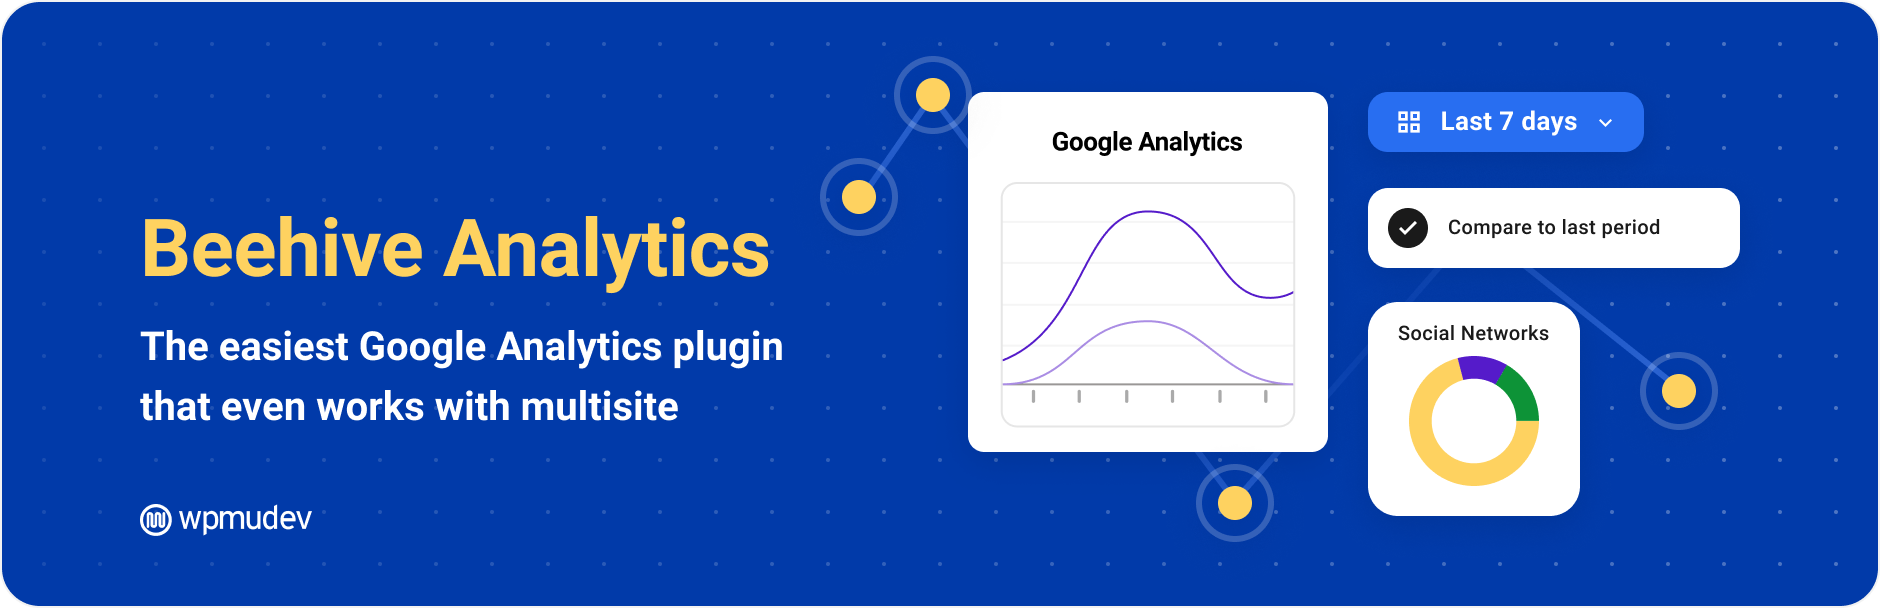 Beehive Analytics – Google Analytics Dashboard